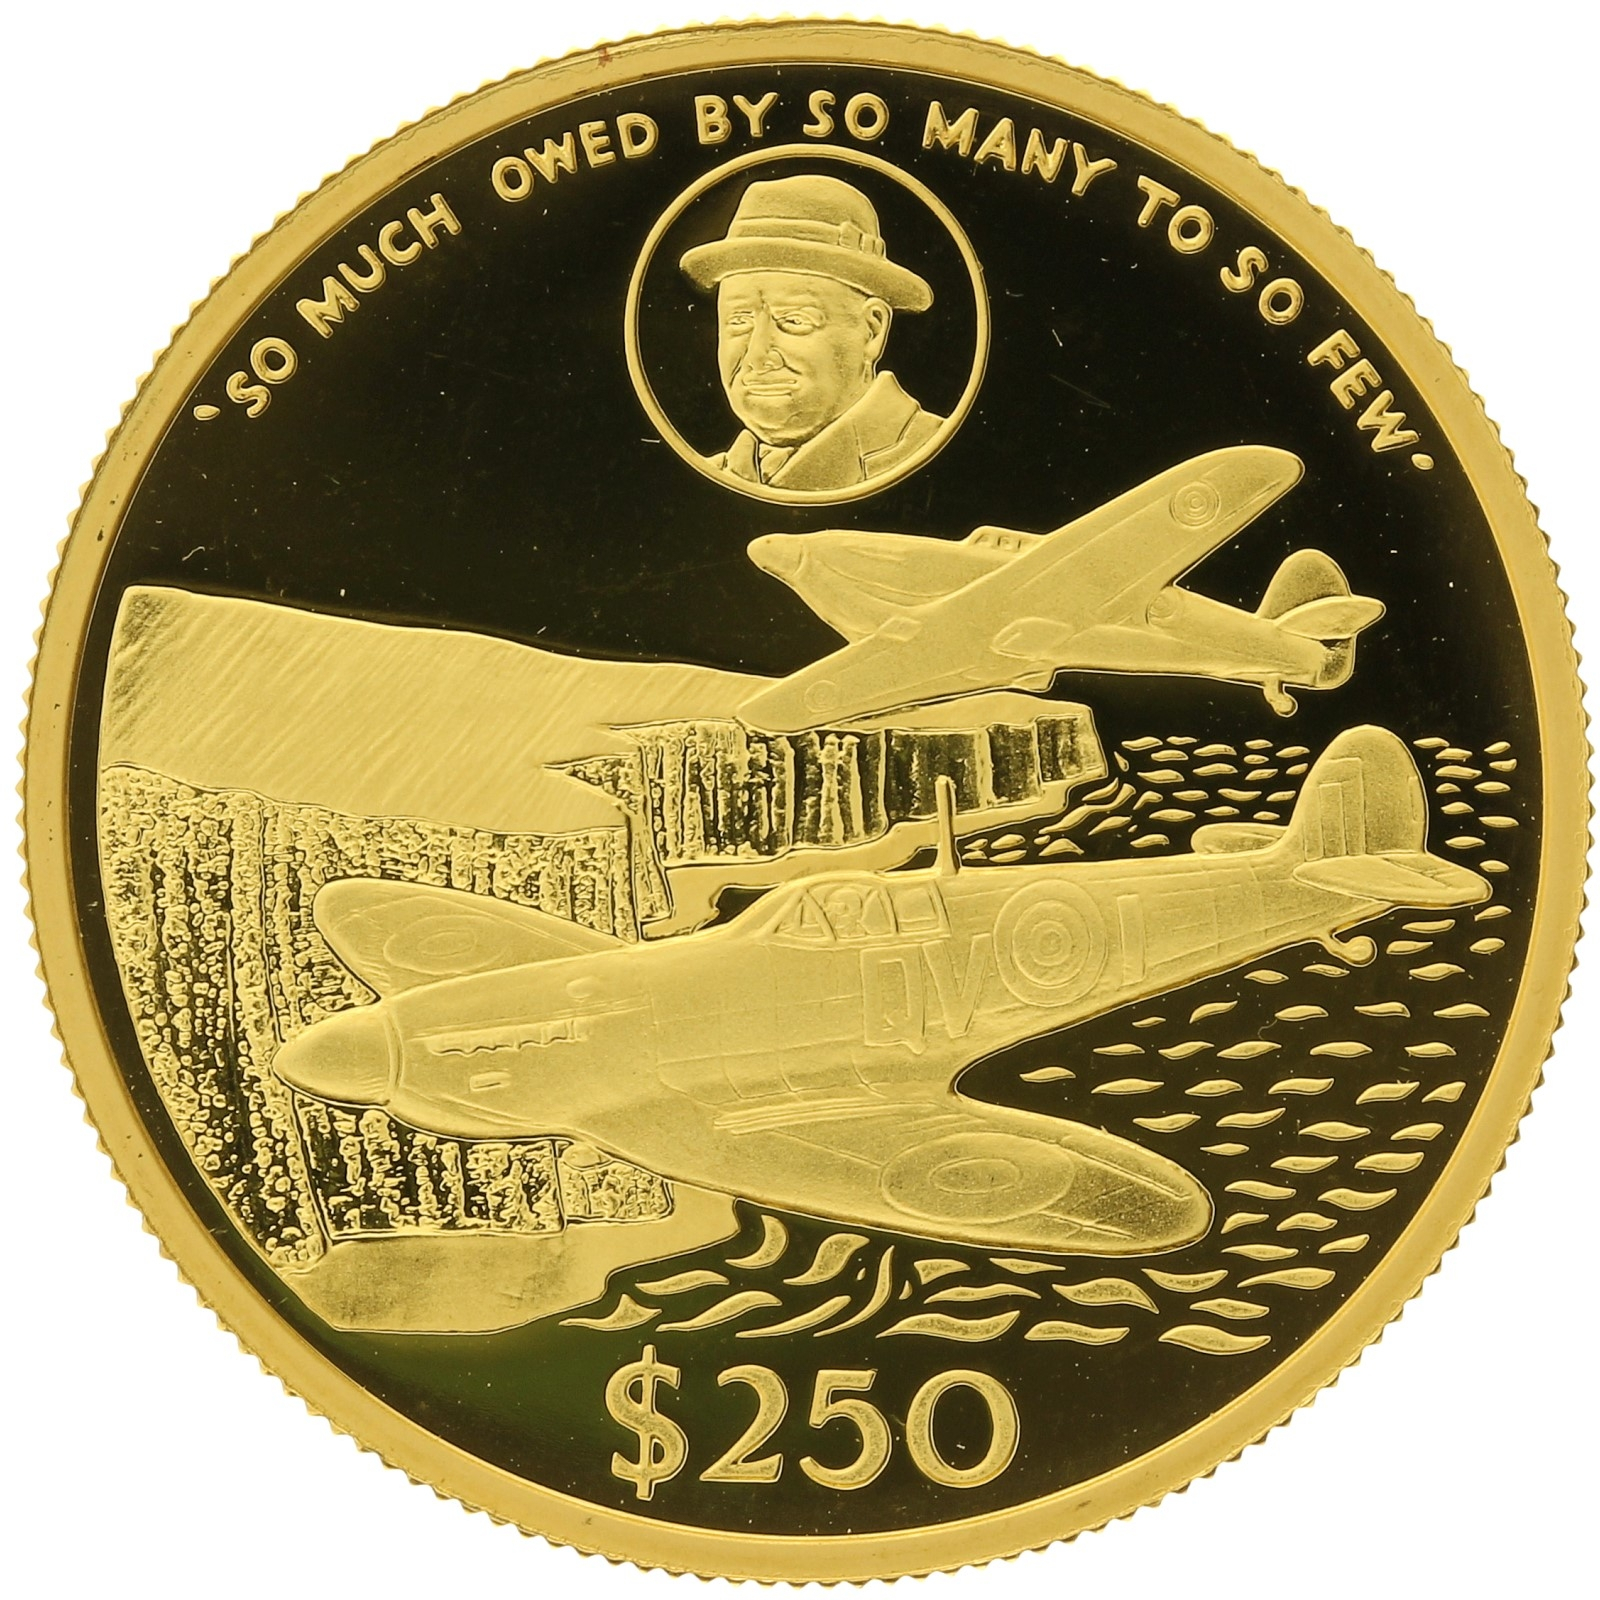 Cayman Islands - 250 dollars - 1990 - Sir Winston Churchill - 1oz